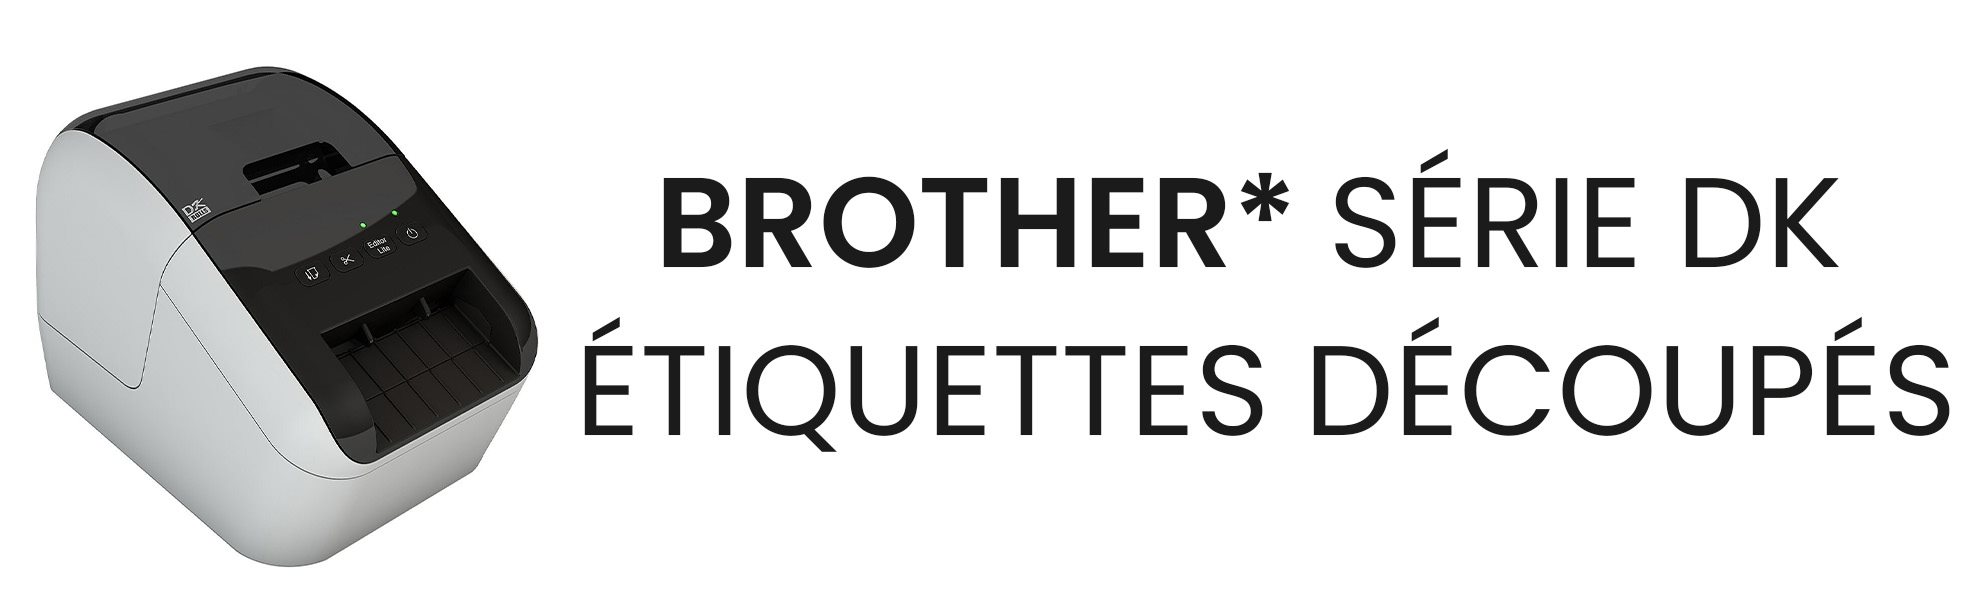 BROTHER_ étiquettes decoupés